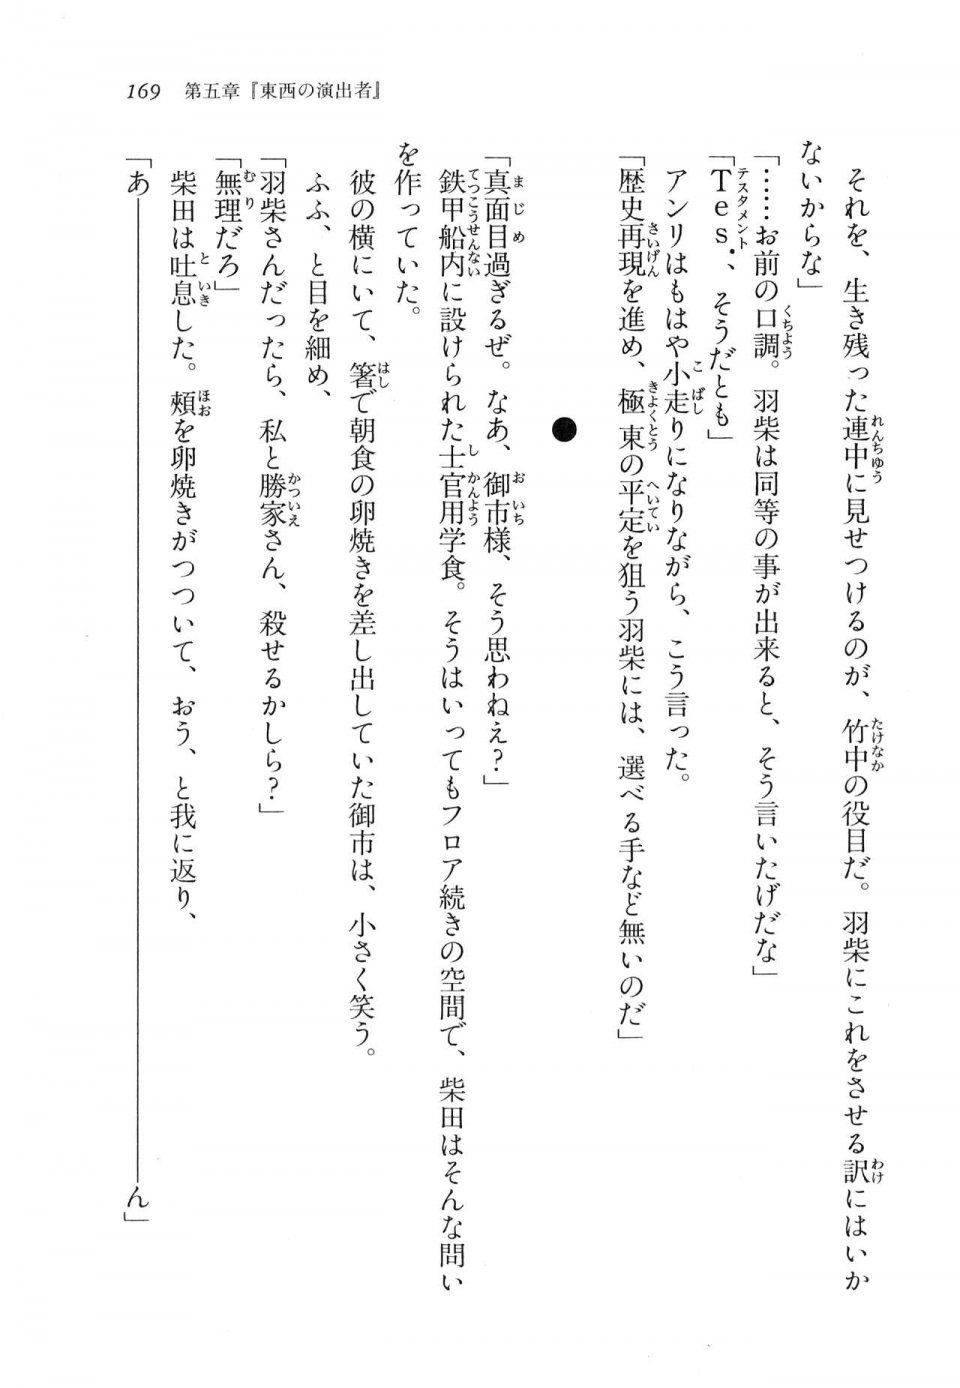 Kyoukai Senjou no Horizon LN Vol 11(5A) - Photo #169